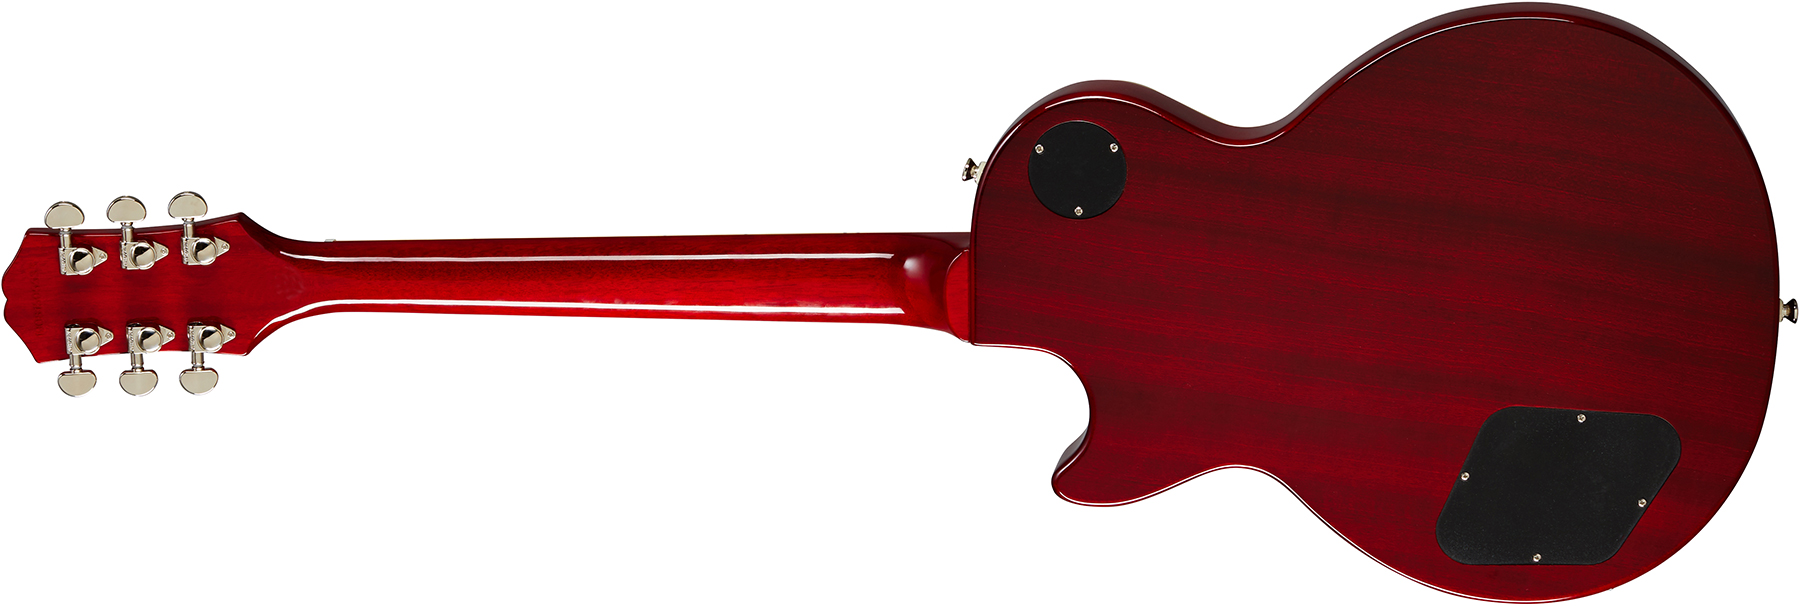 Epiphone Les Paul Standard 60s Gaucher 2h Ht Rw - Bourbon Burst - Left-handed electric guitar - Variation 1